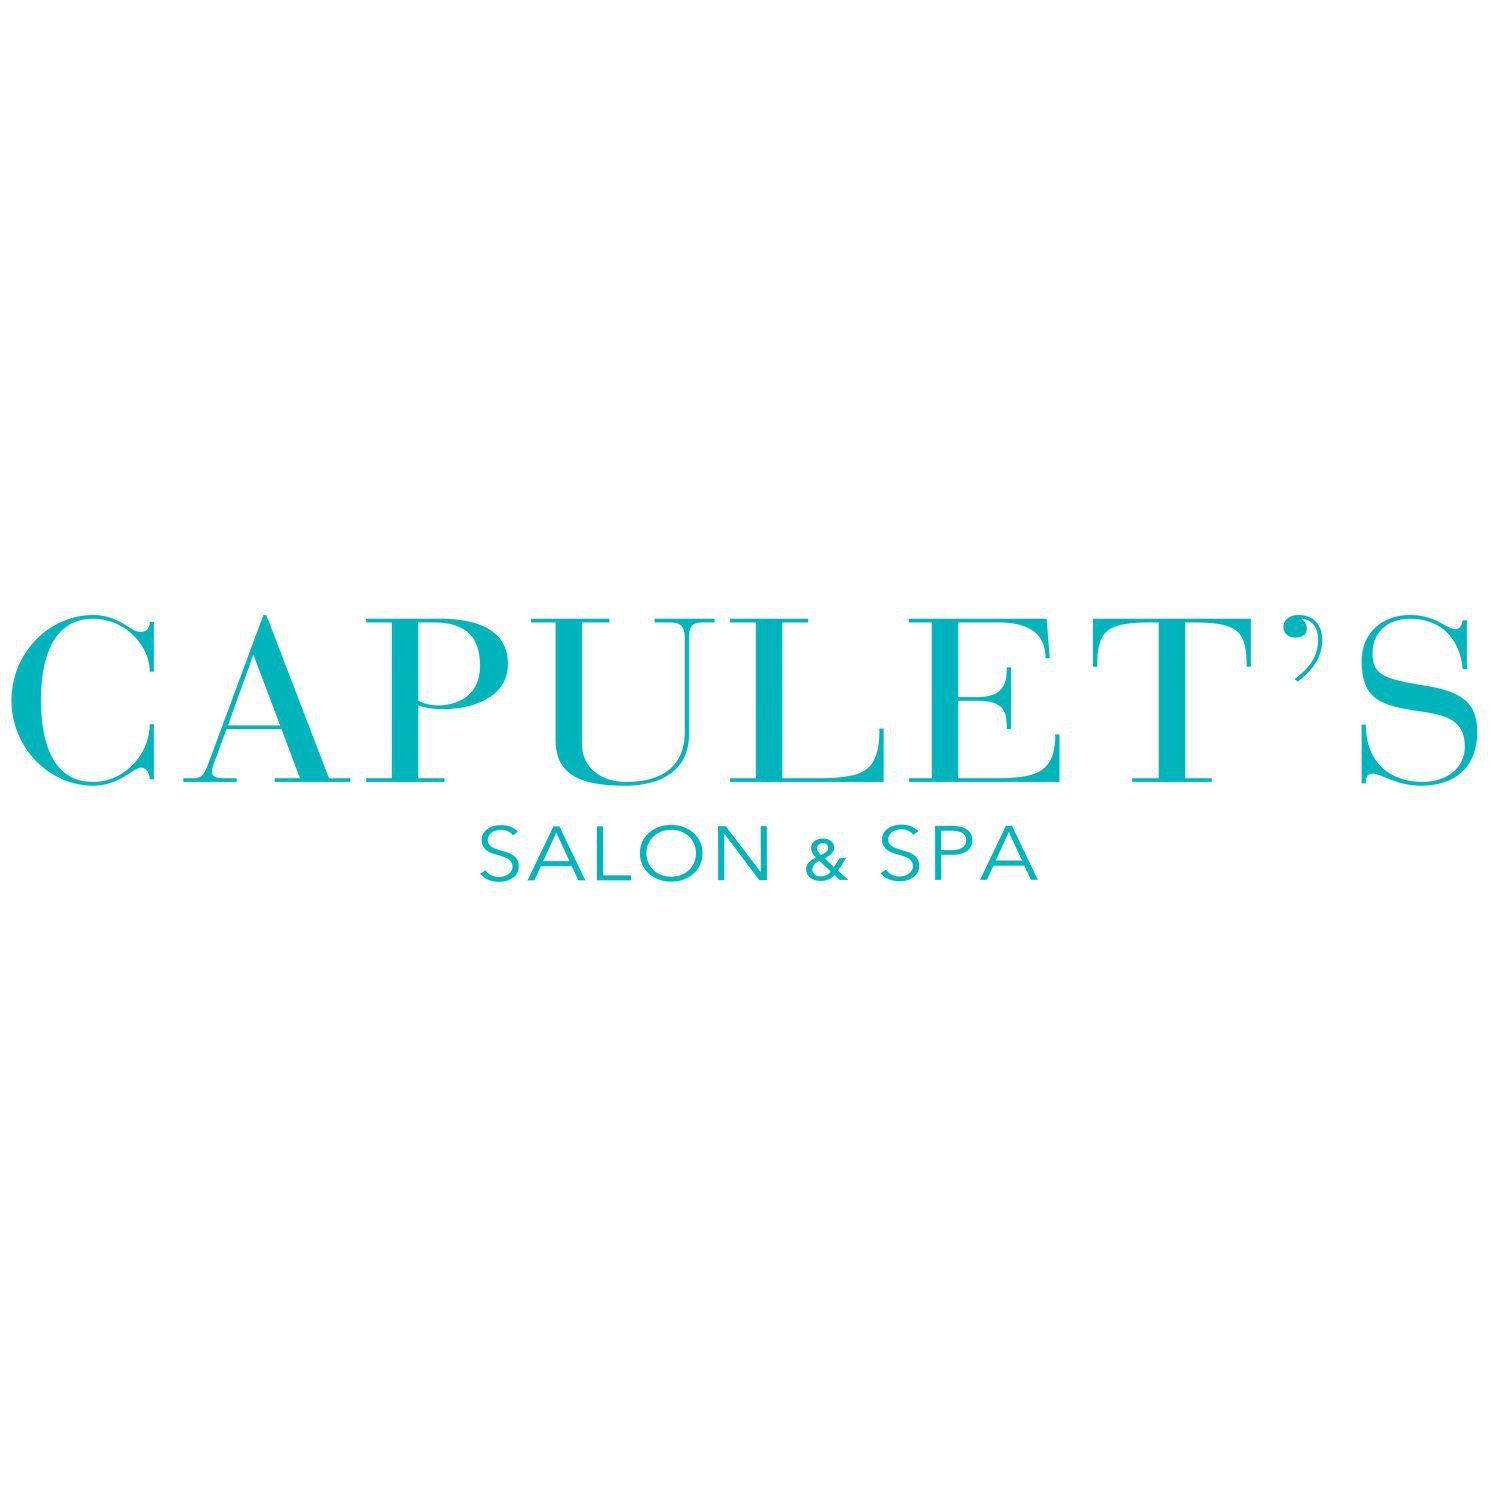 Capulet's Salon & Spa, 141 Montague St, Brooklyn, 11201